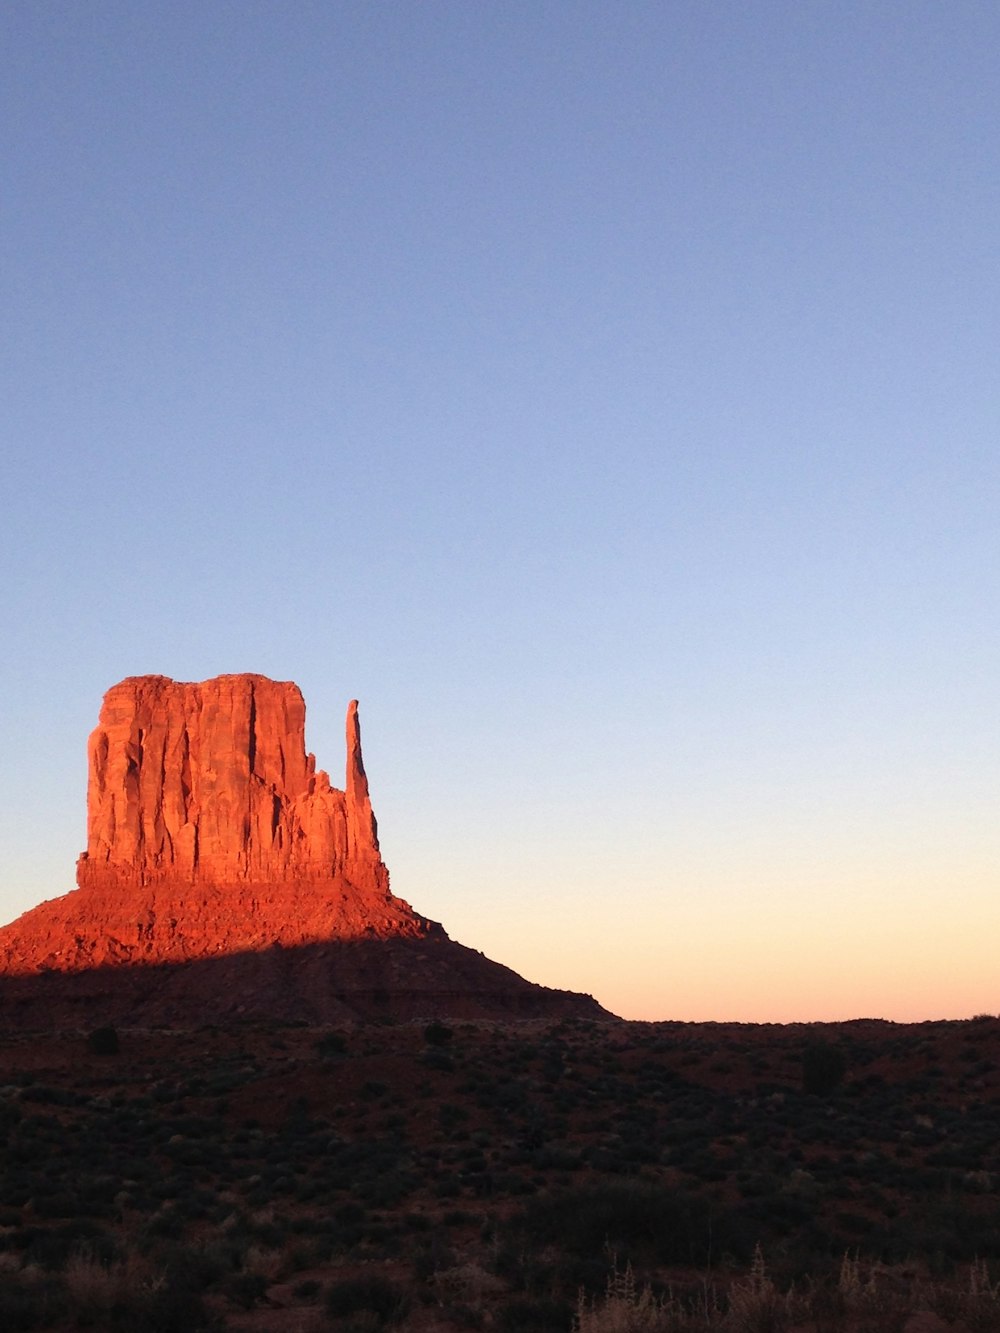 Une grande formation rocheuse rouge au milieu d’un désert